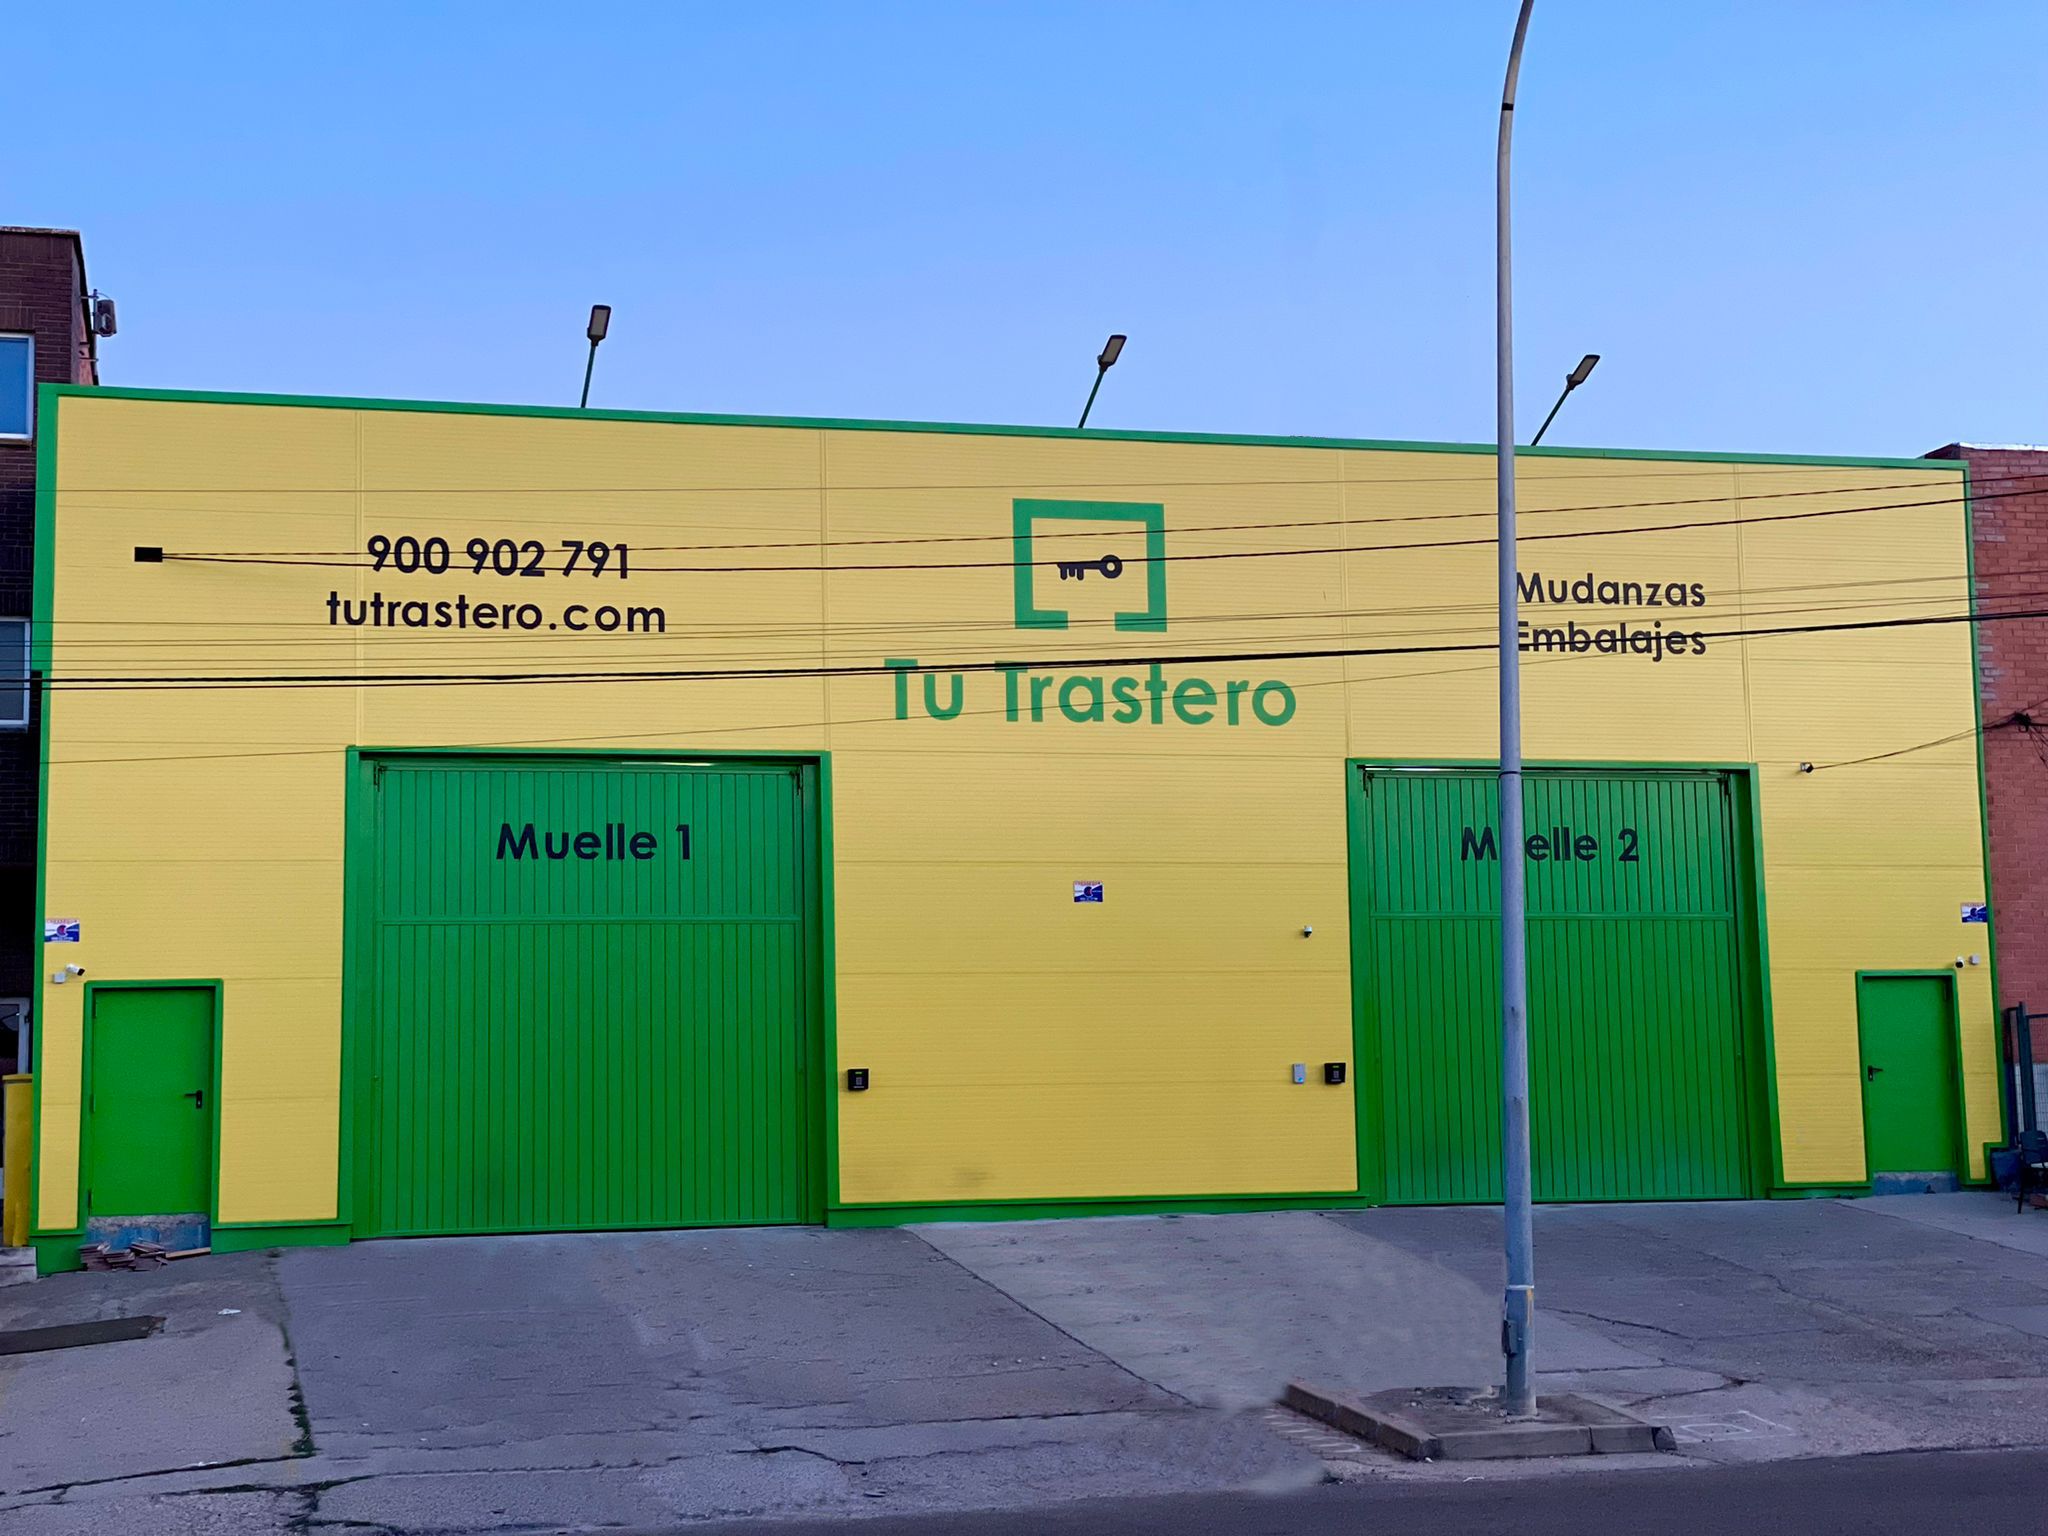 Tu Trastero inaugura un nuevo centro de alquiler de trasteros en Valladolid